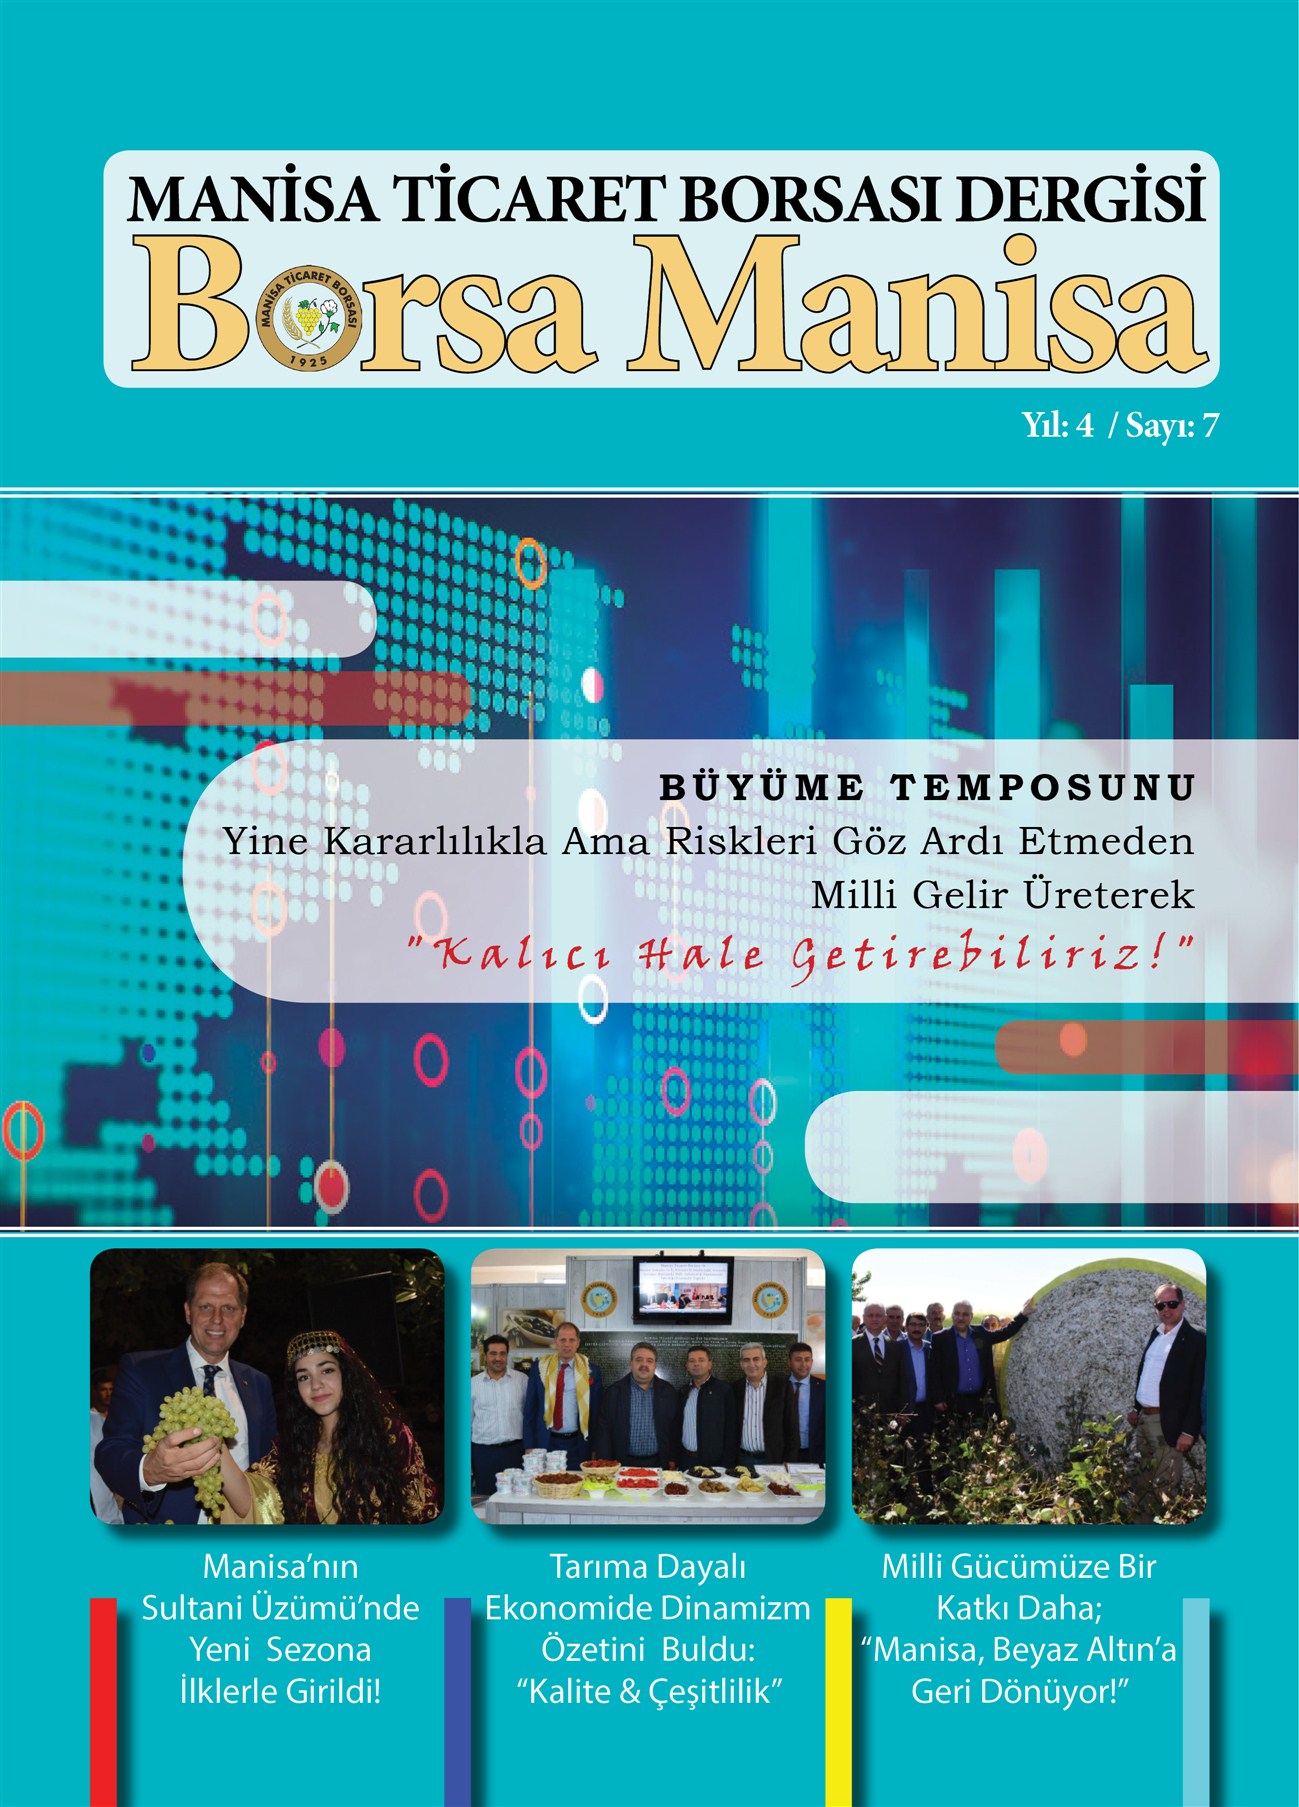 Borsamanisa Dergisi Manisa Ticaret Borsasi Resmi Web Sitesi